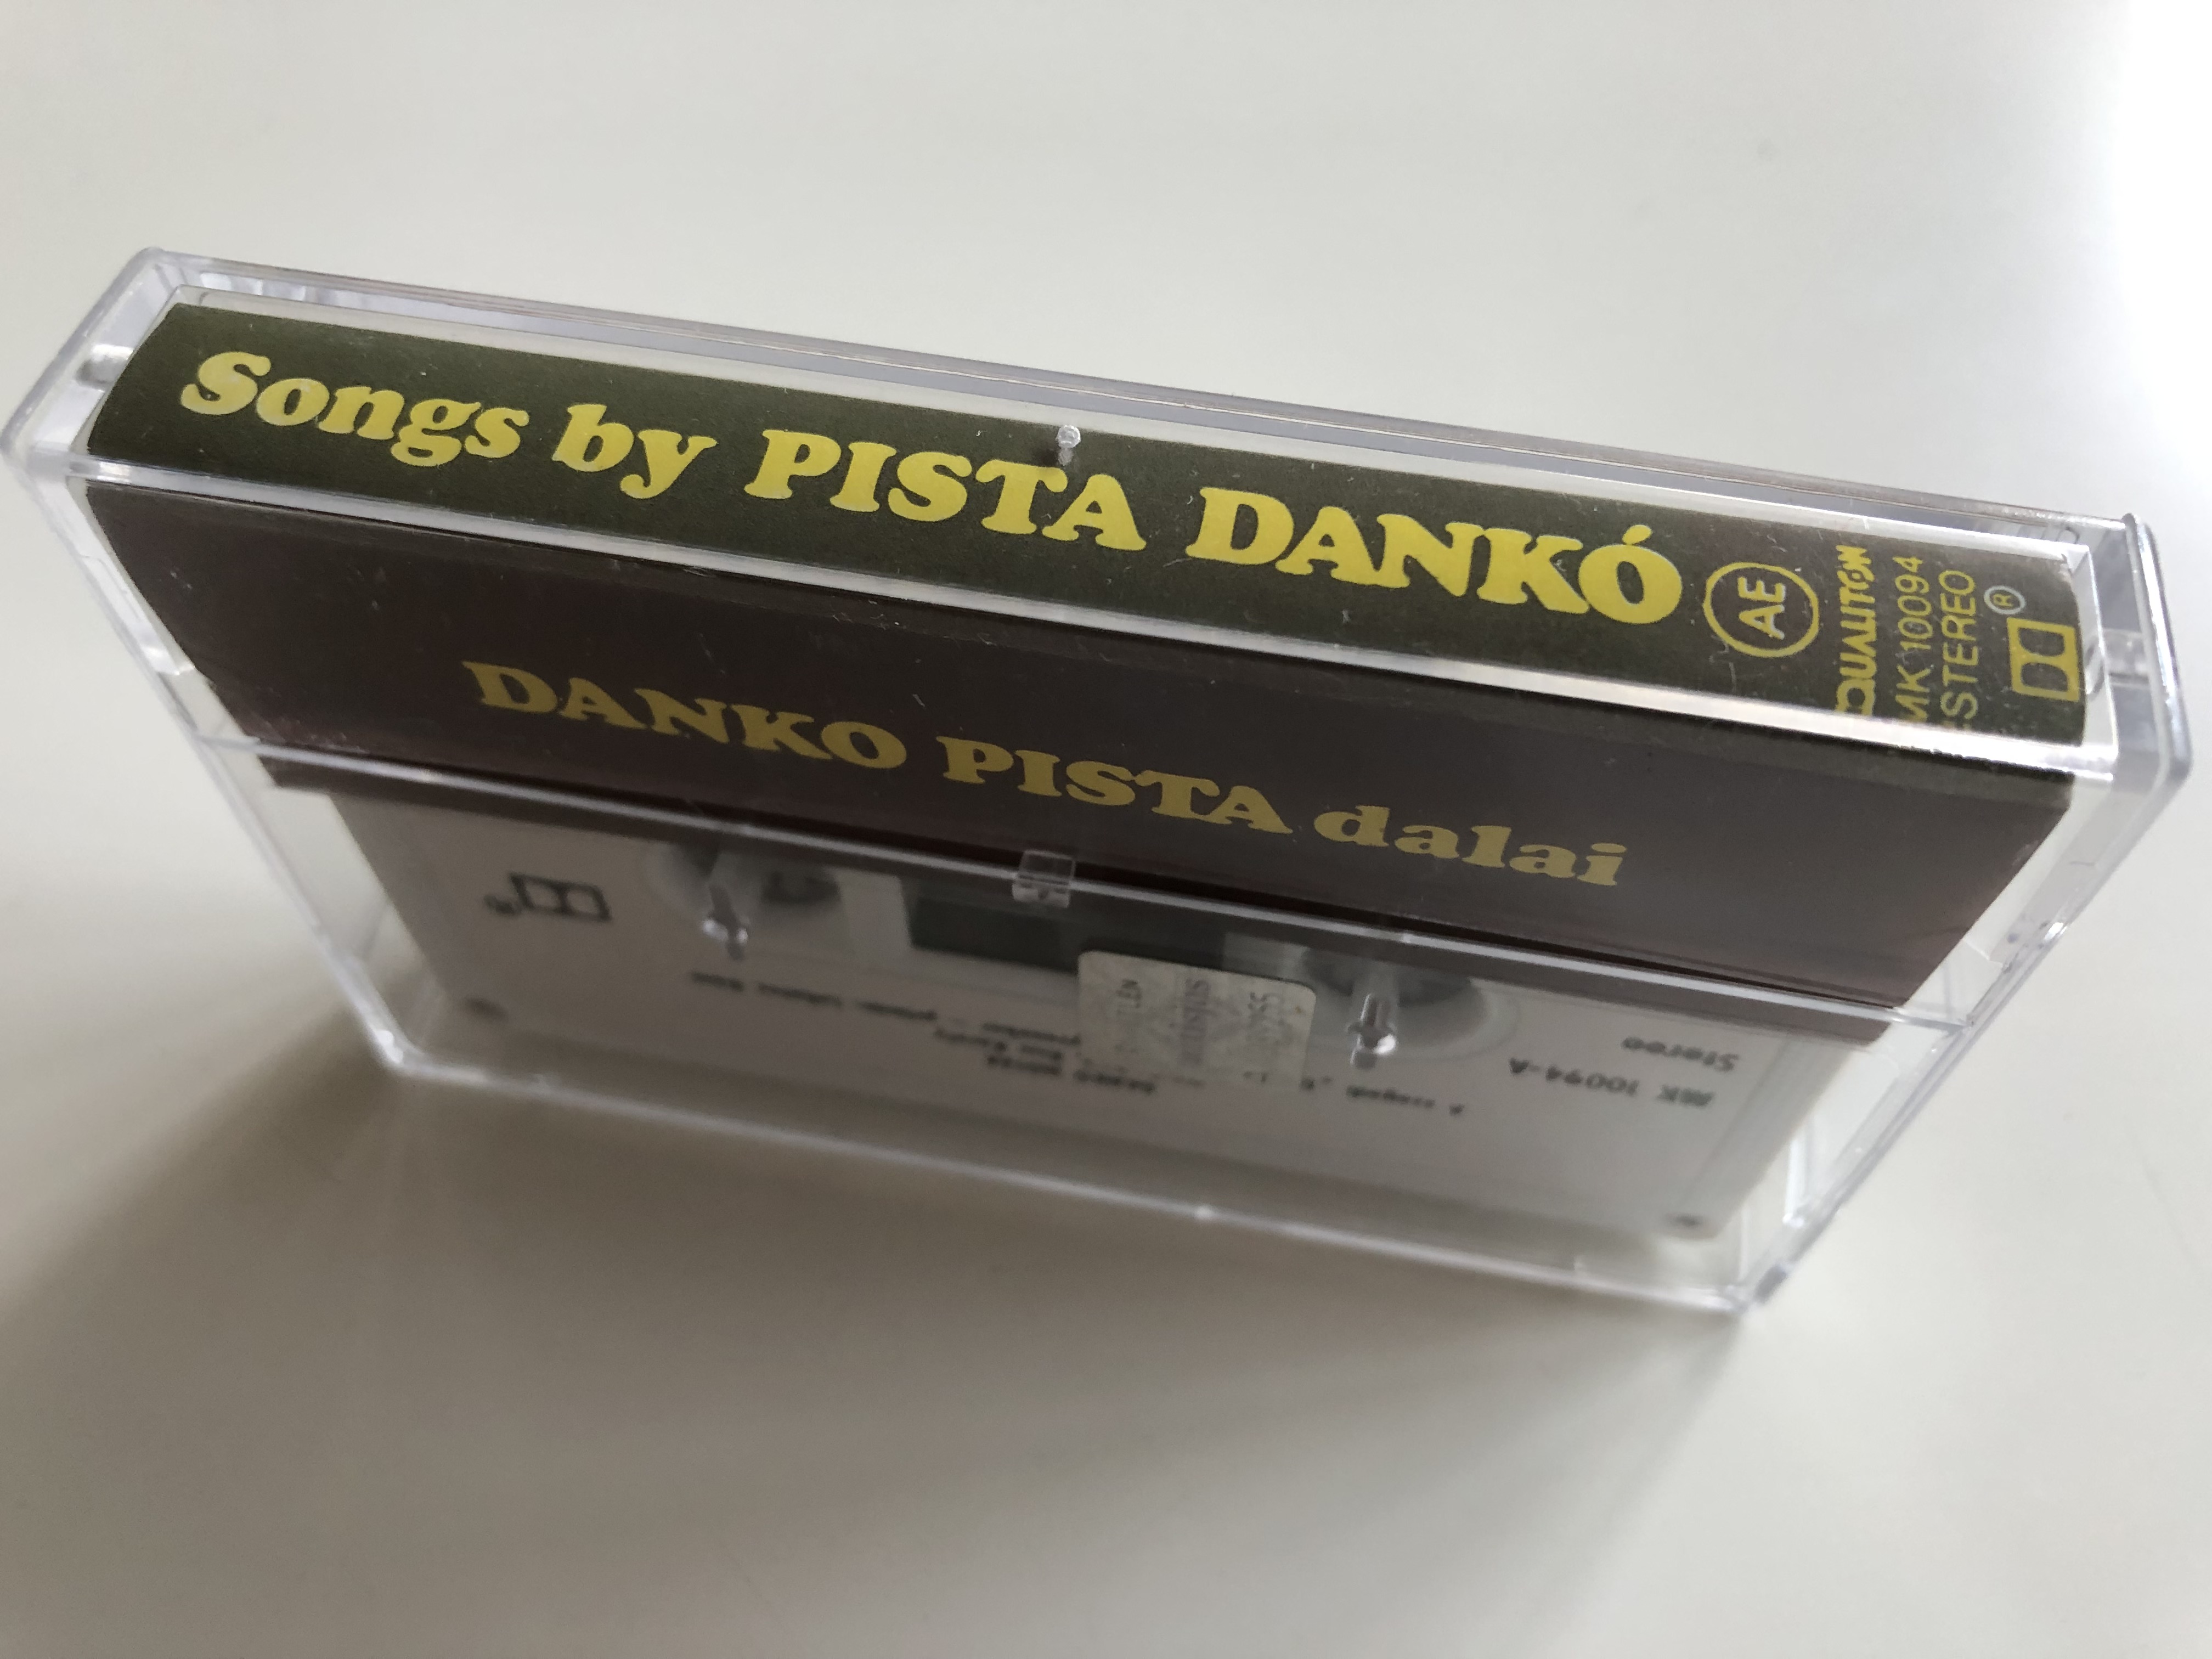 dank-n-t-k-songs-by-pista-dank-hungaroton-cassette-stereo-mk-10094-2-.jpg